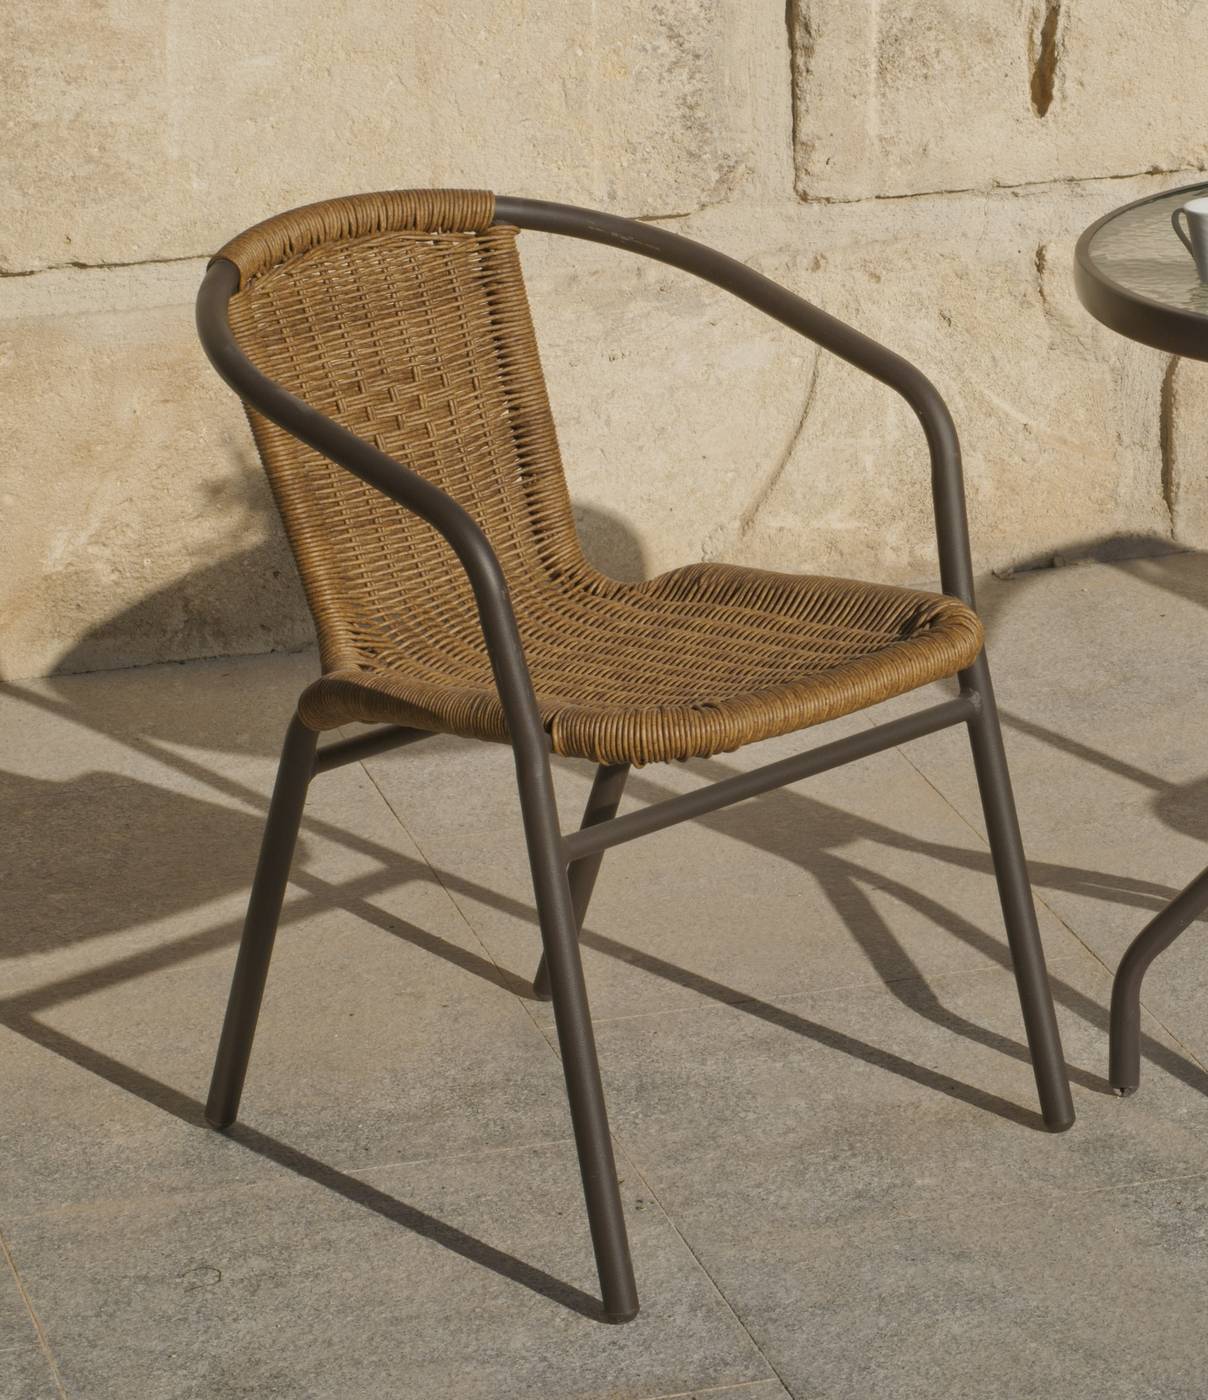 Conjunto Aluminio Oslo-90 - Conjunto para jardín de aluminio color bronce: mesa redonda de 90 cm. con tapa de cristal templado y 4 sillones de wicker reforzado